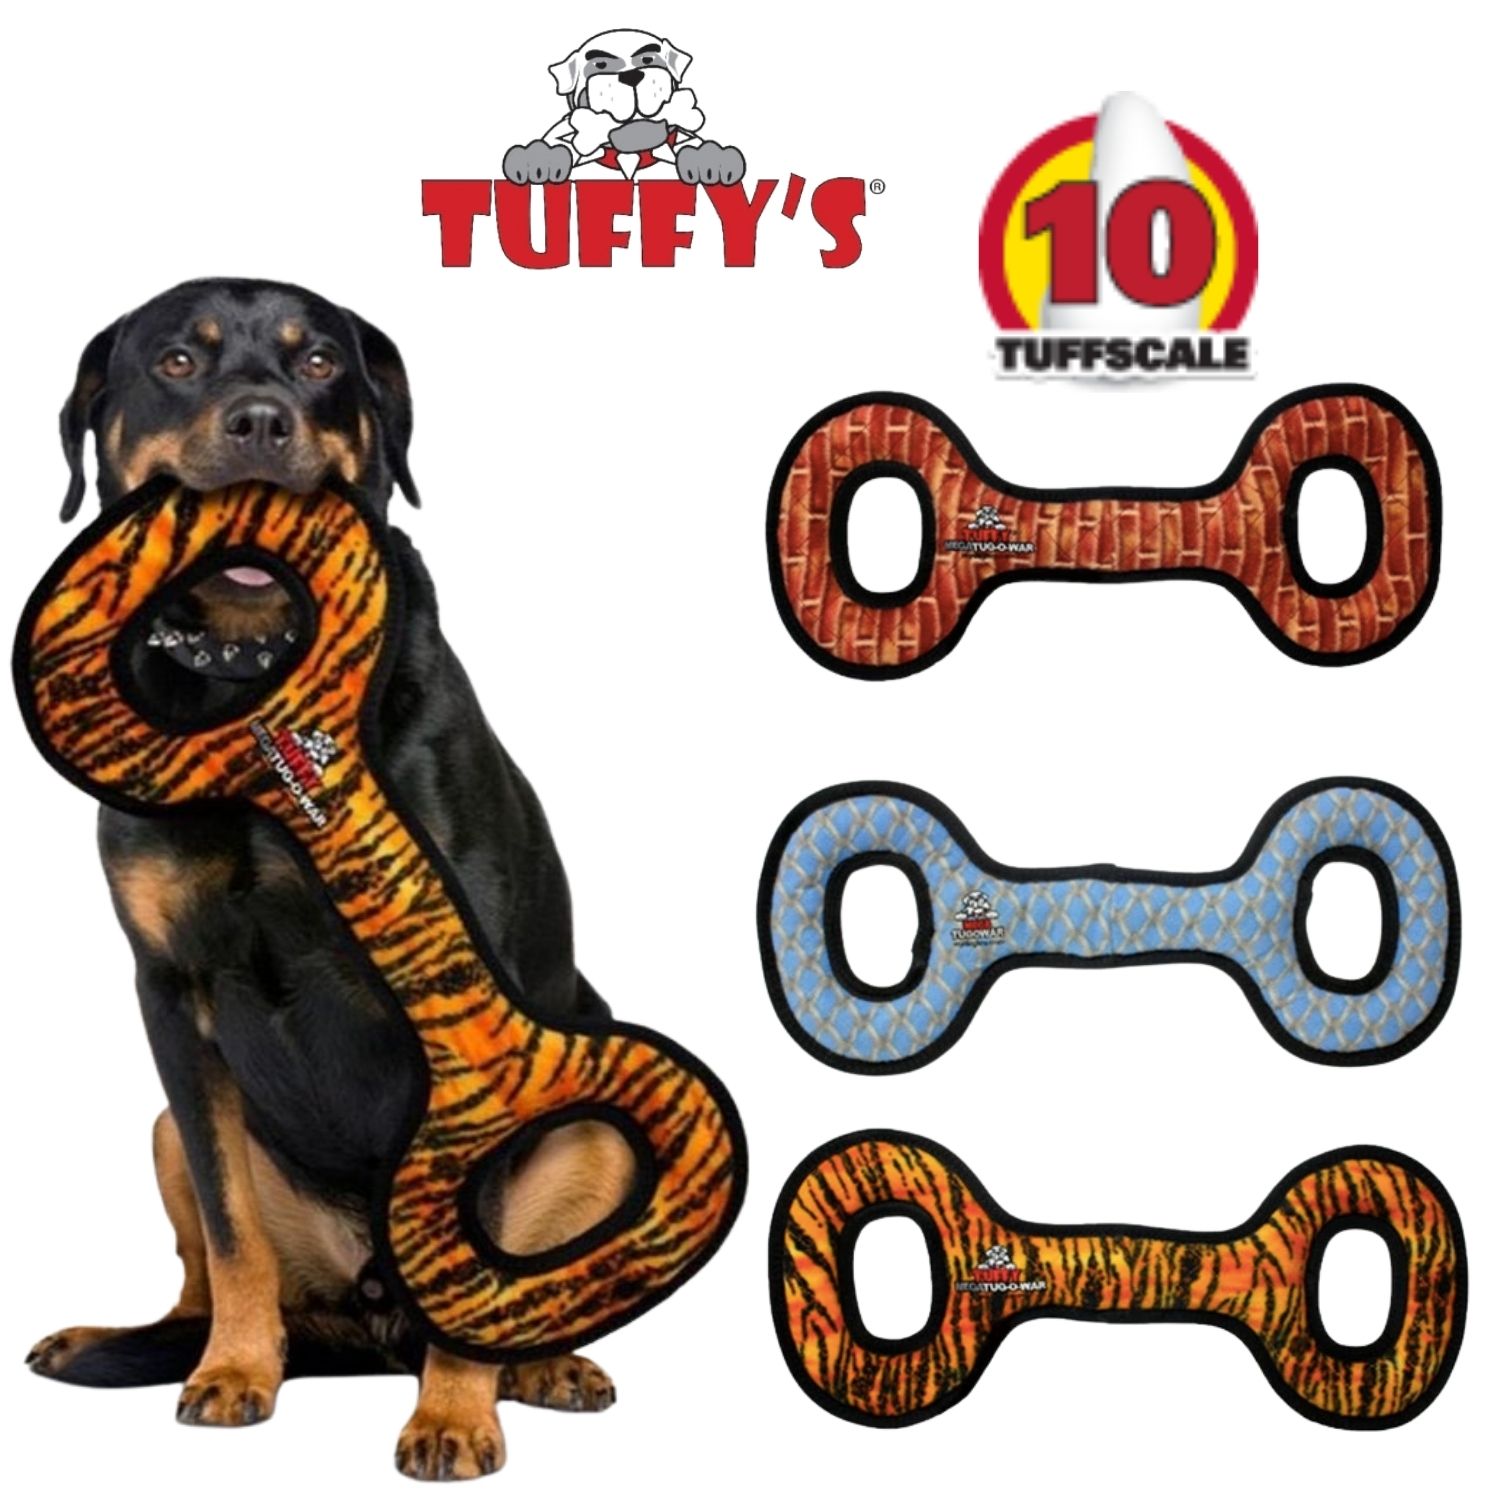 [Tuffys/Mighty2点500円オフ, 3点1000円オフ]タフィーズ タグオーワー [メガ] 犬用 おもちゃ ぬいぐるみ 丈夫 長持ち 犬のおもちゃ 頑丈 音が鳴る Tuffy's [耐久度10]